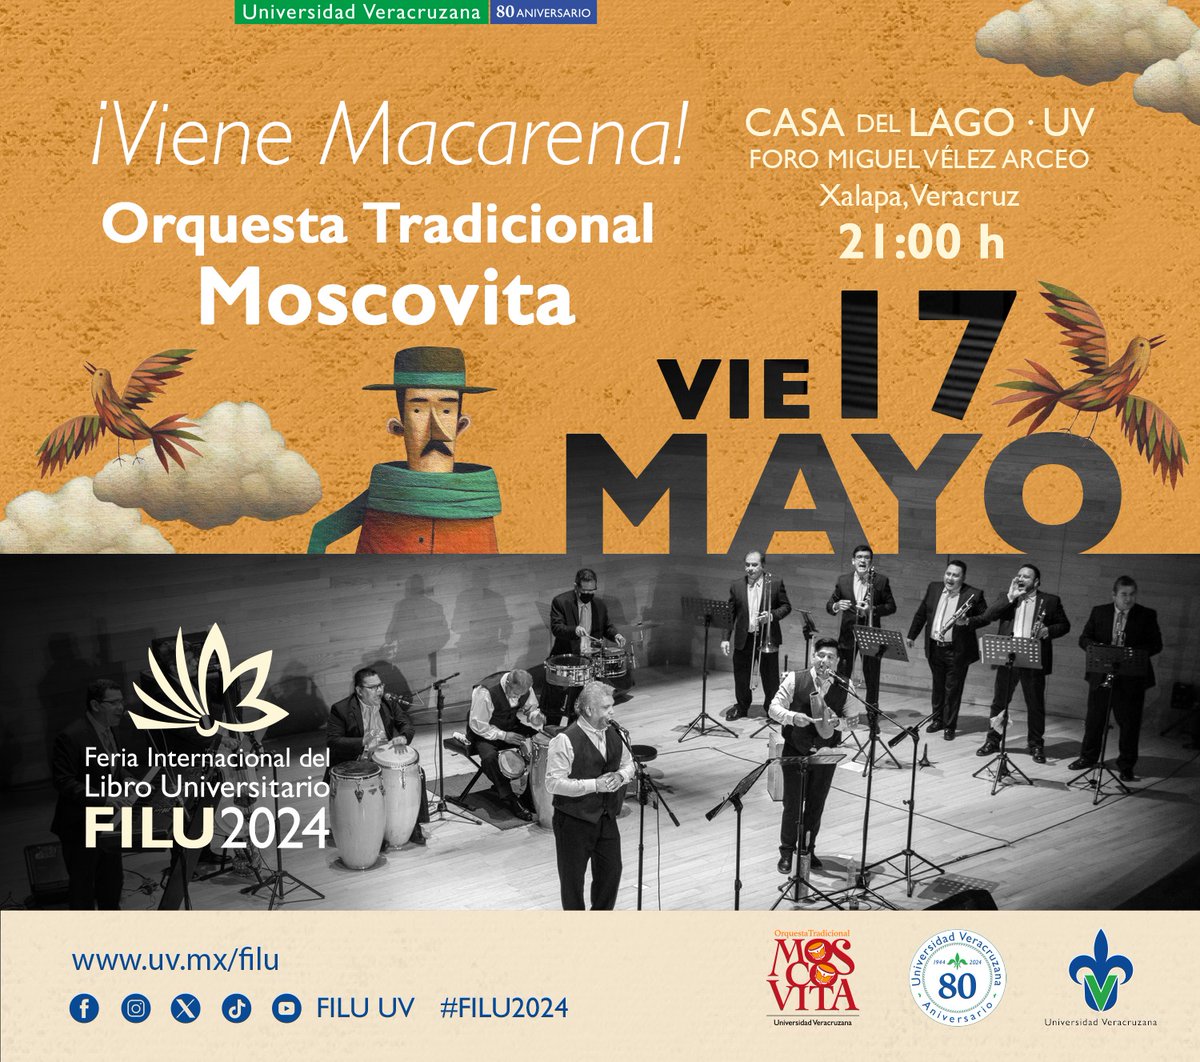 #15AñosCasadelLagoUV🥳 📆Este viernes 17 de mayo las actividades de la #FILU2024 en el Foro 'Miguel Vélez Arceo' de #Casa del Lago UV con personalidades 🏆 y premios. ¡No te las pierdas! 😉